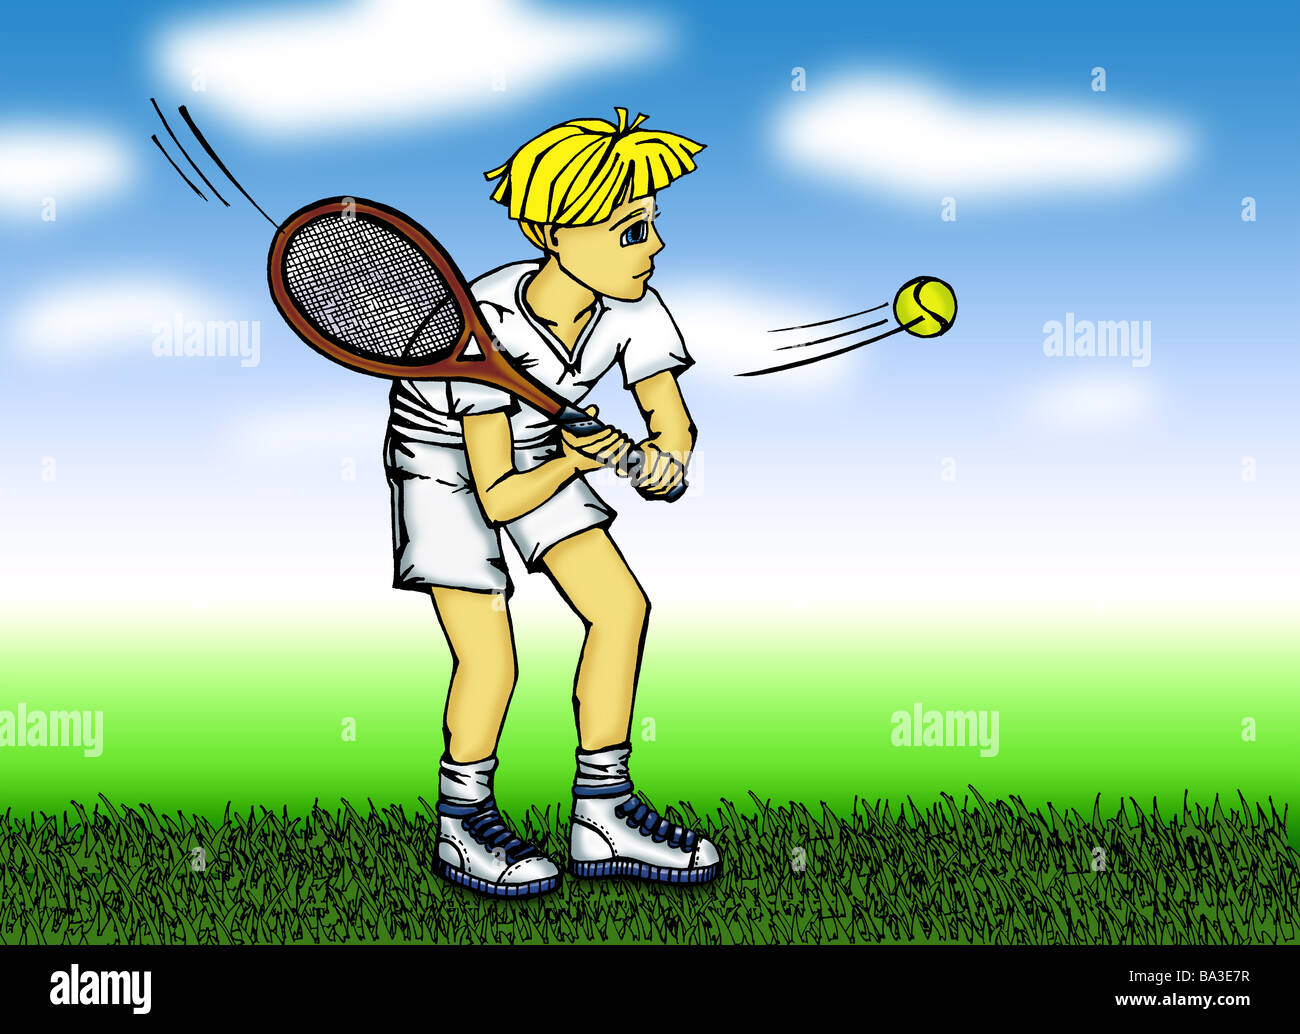 Tennis garçon Manga Illustration de dessins graphiques joue prés  comique-Mangastil Mangafigur bande dessinée dessin comic-figure Photo Stock  - Alamy